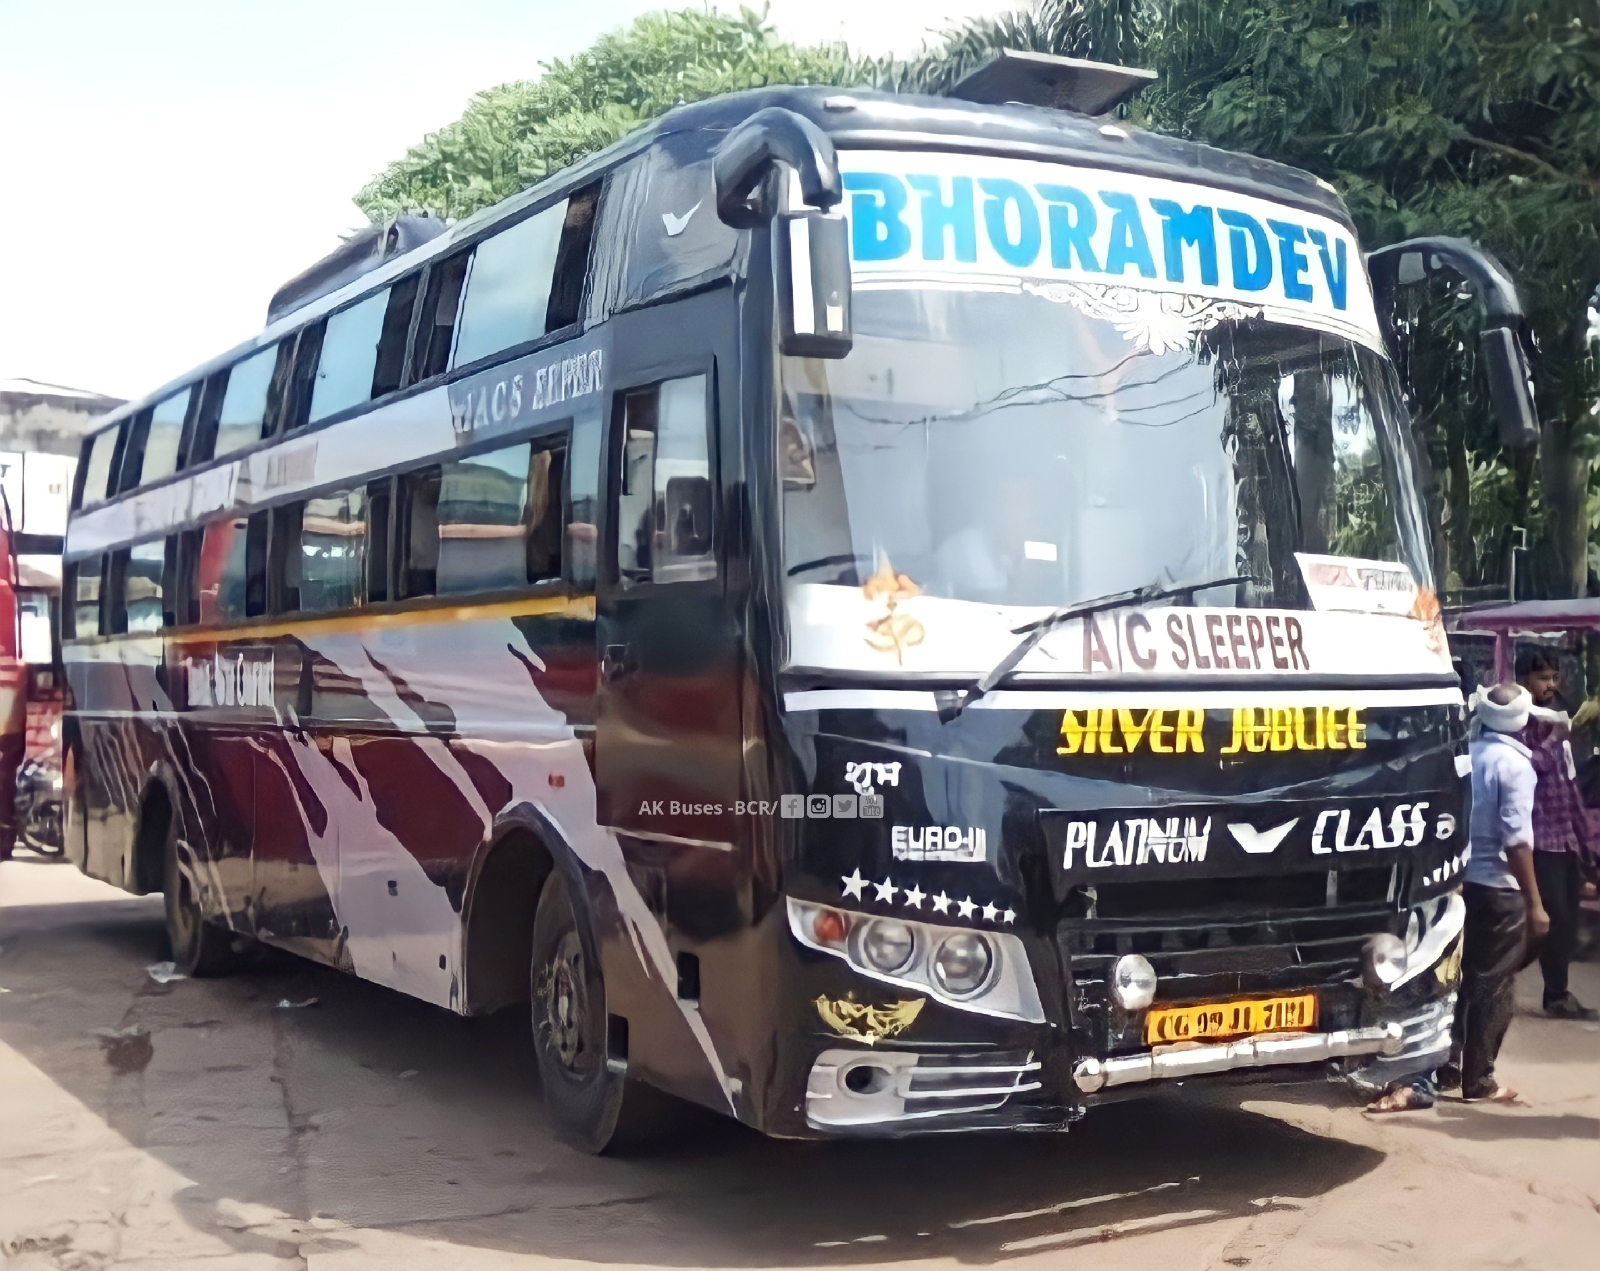 Bhoramdev travels luxury sleeper bus